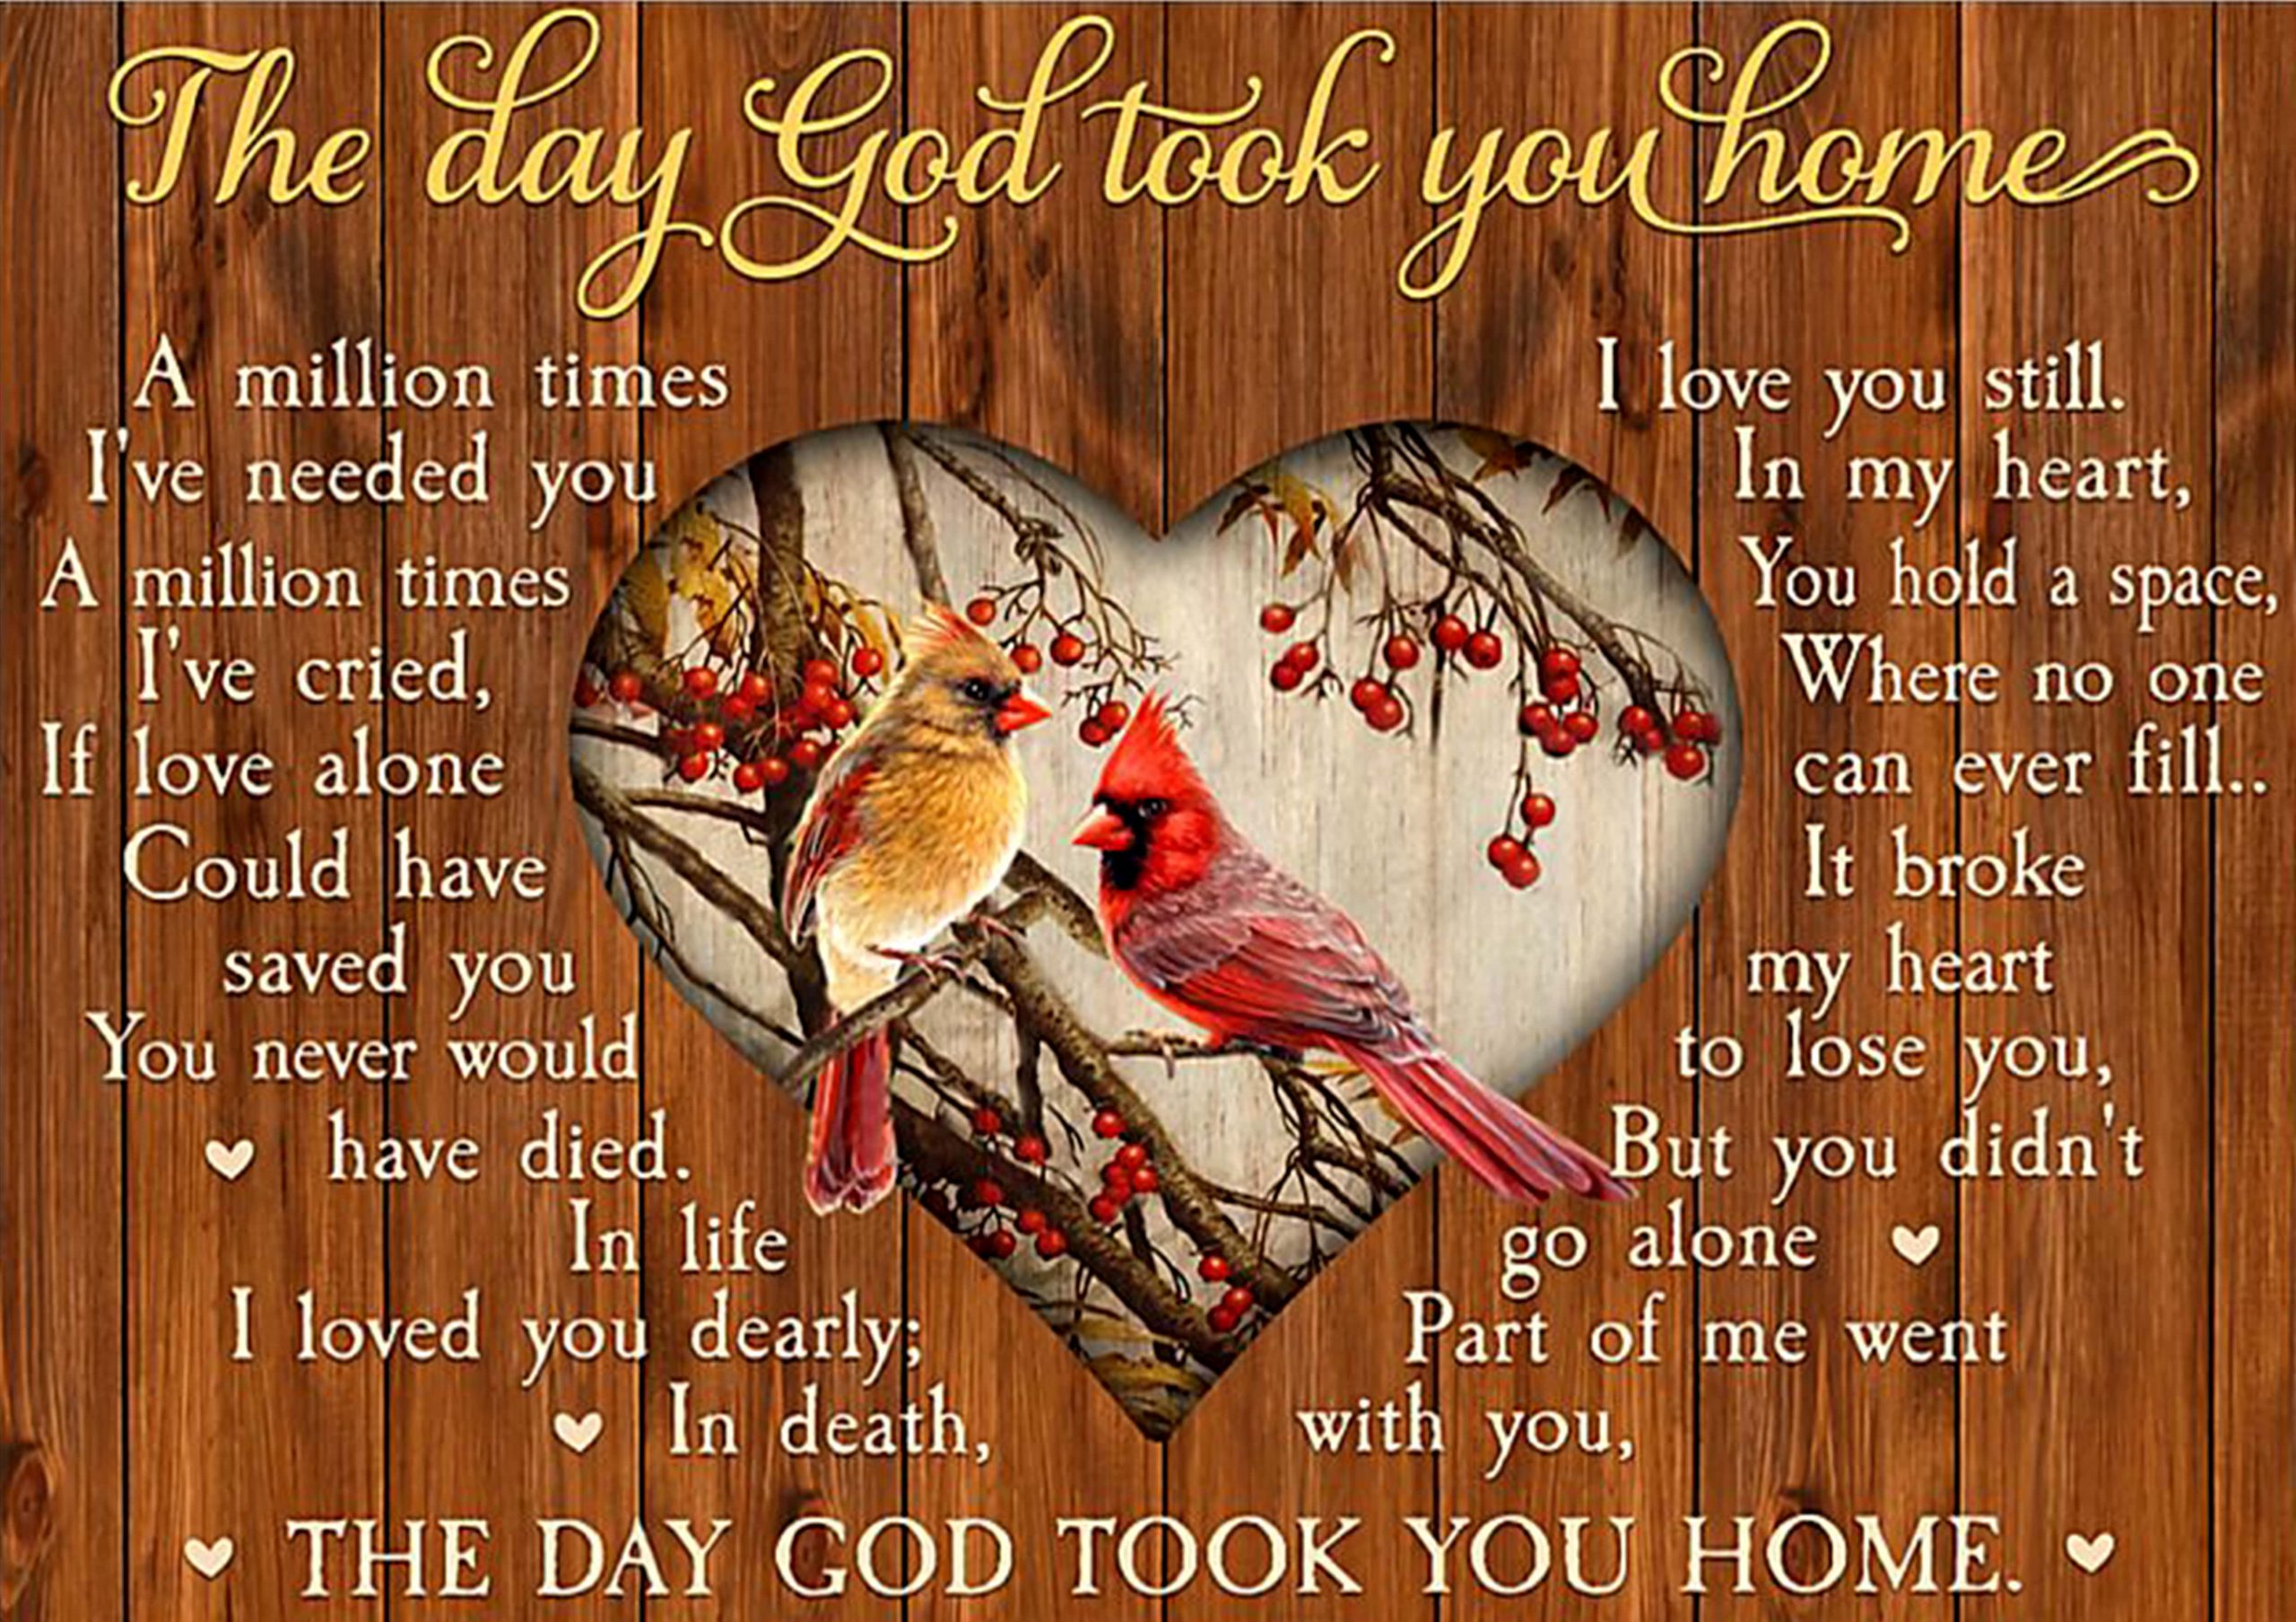 the day God took you home cardinalis cardinalis poster 1